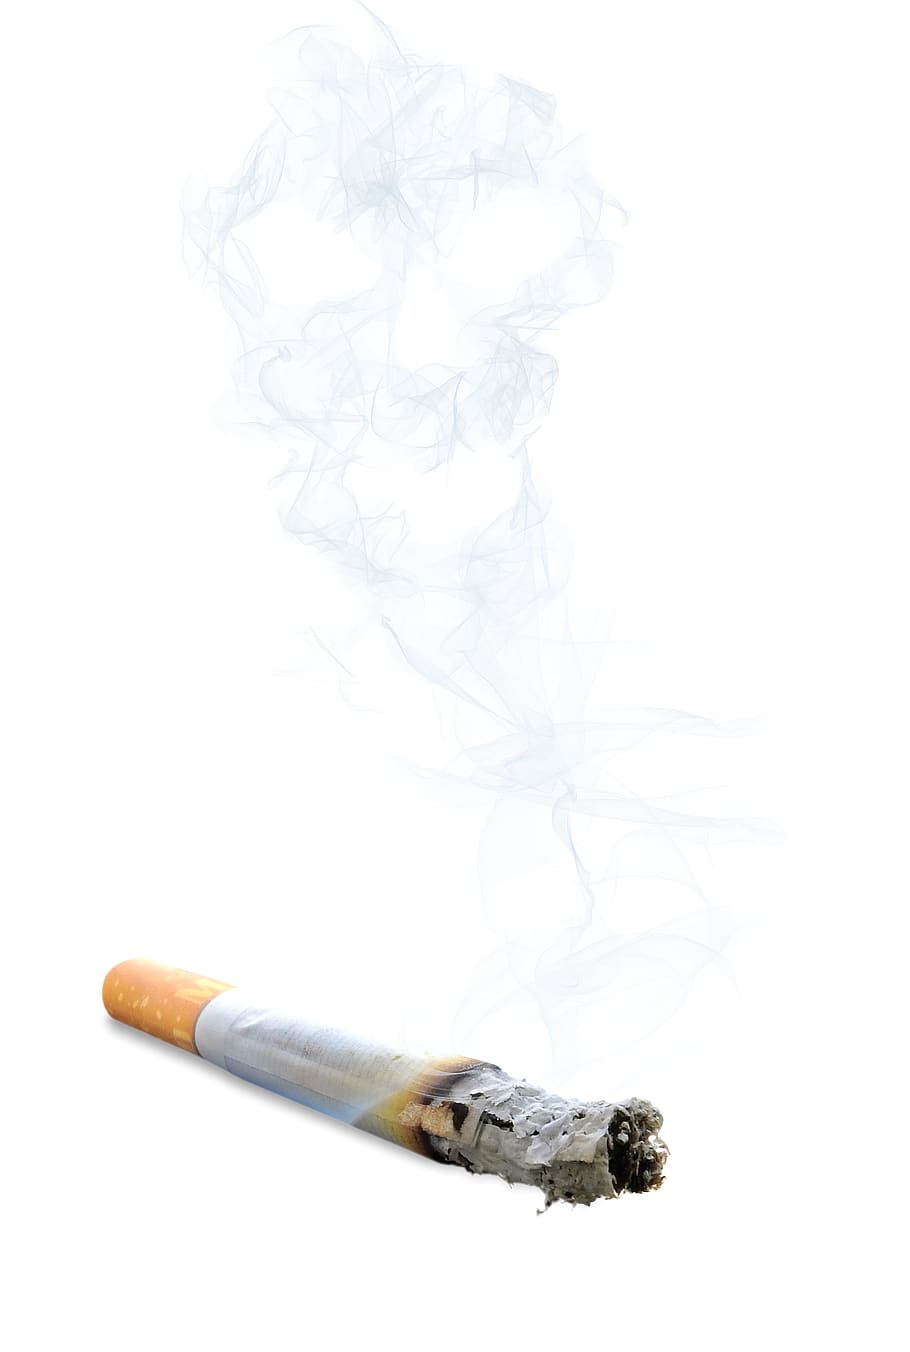 cigarro, fumar, fumaça, brasas, cinzas, morte, crânio e ossos cruzados, vício, insalubre, sinal de aviso